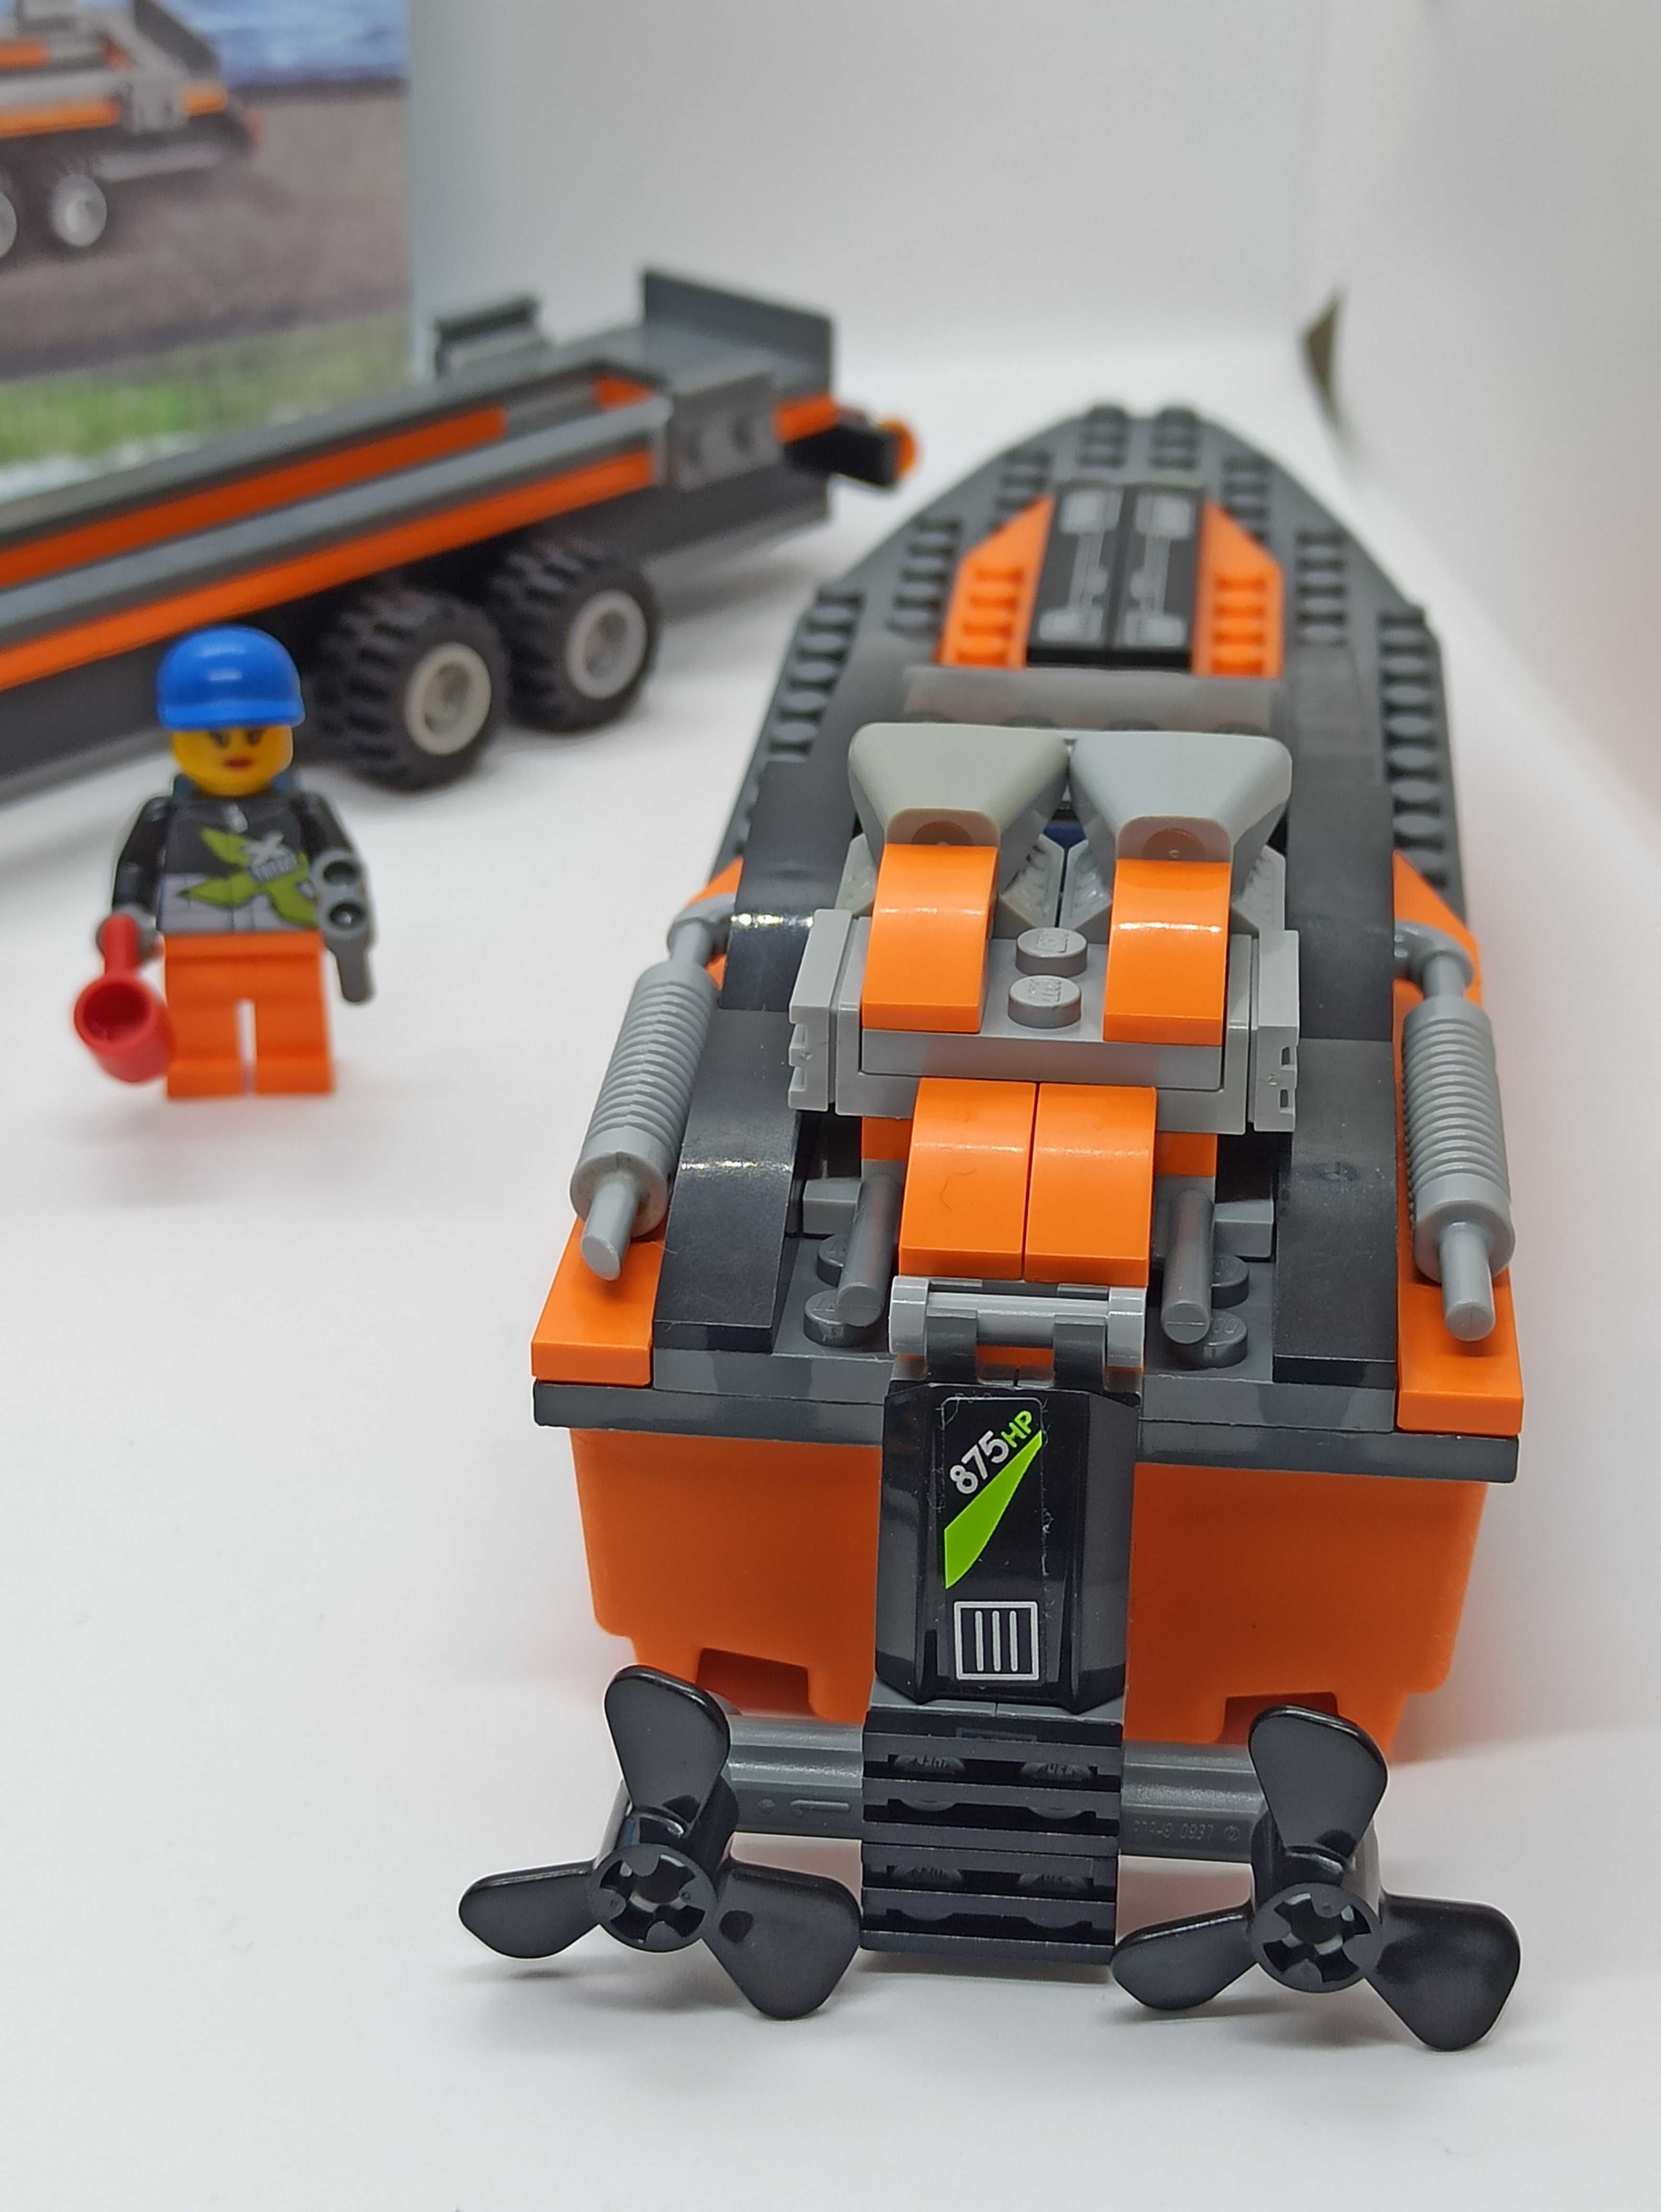 Lego 60085 4x4 with Powerboat łódz wyścigowa, motorówka.